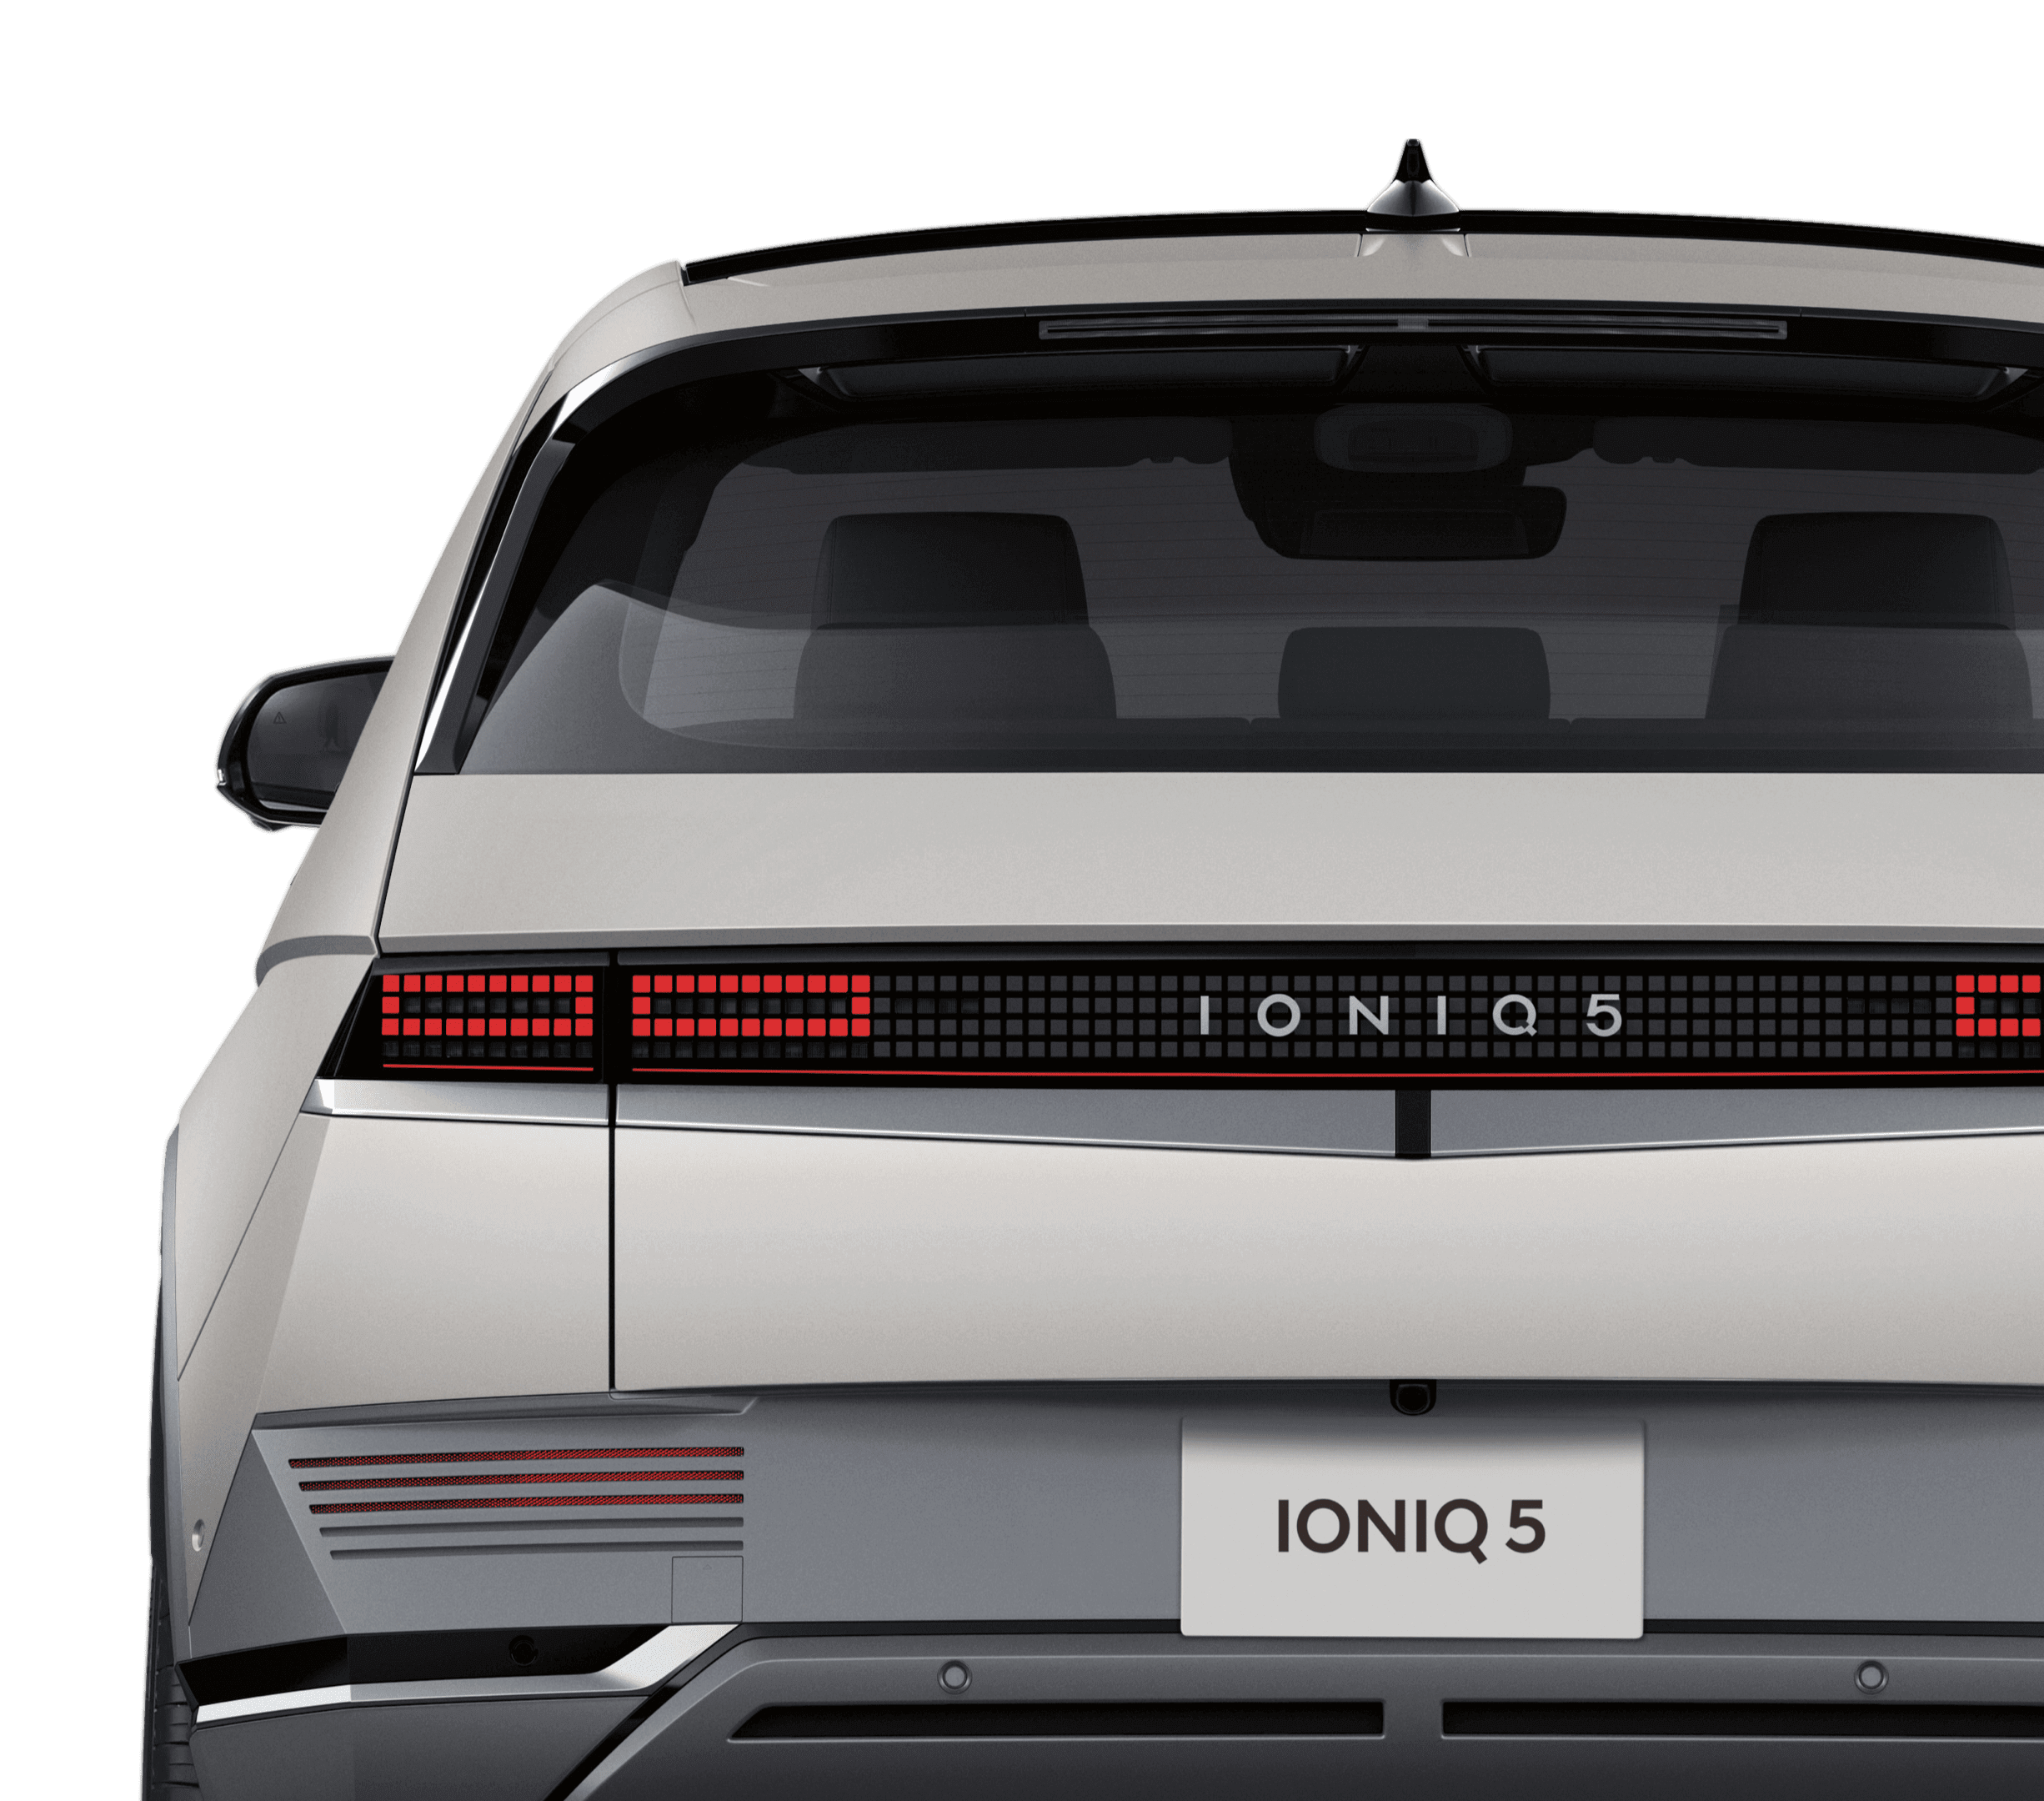 IONIQ 5 (アイオニック 5) 電気自動車 EV パラメトリックピクセルランプをリヤ - Hyundai Mobility Japan (ヒョンデモビリティジャパン)